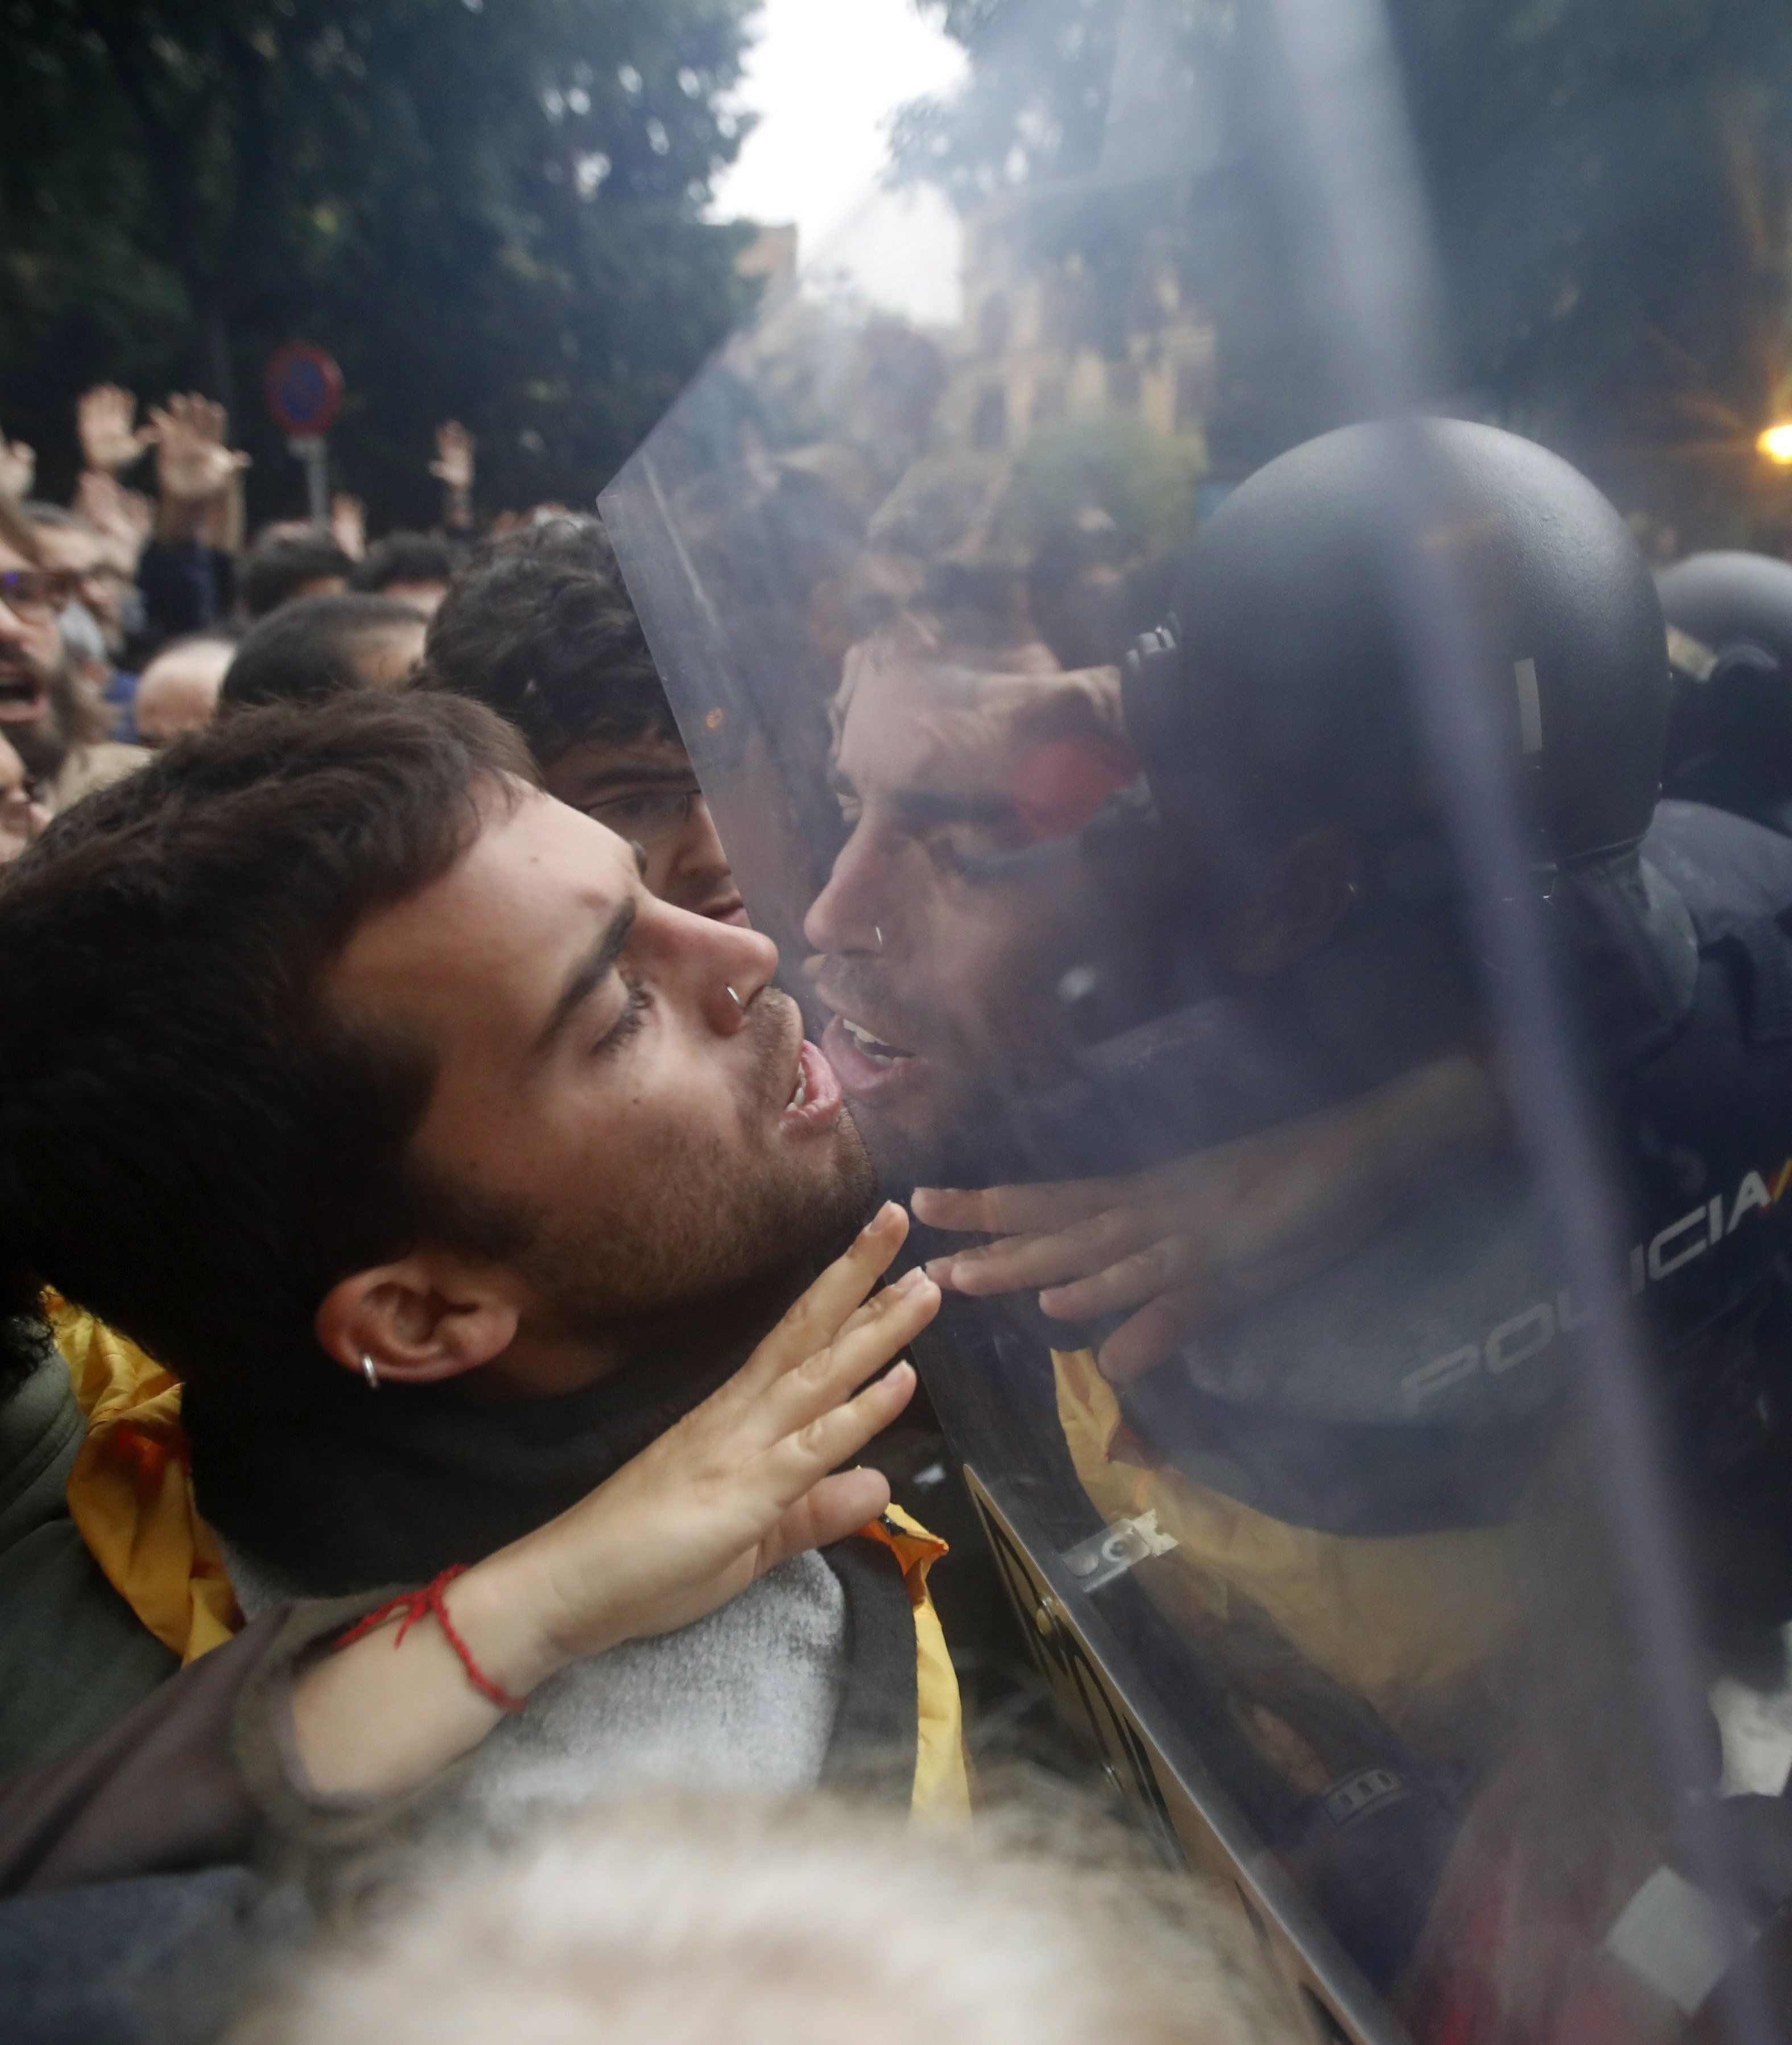 Itt a videó és képek a katalán választók és a rohamrendőrök összecsapásáról